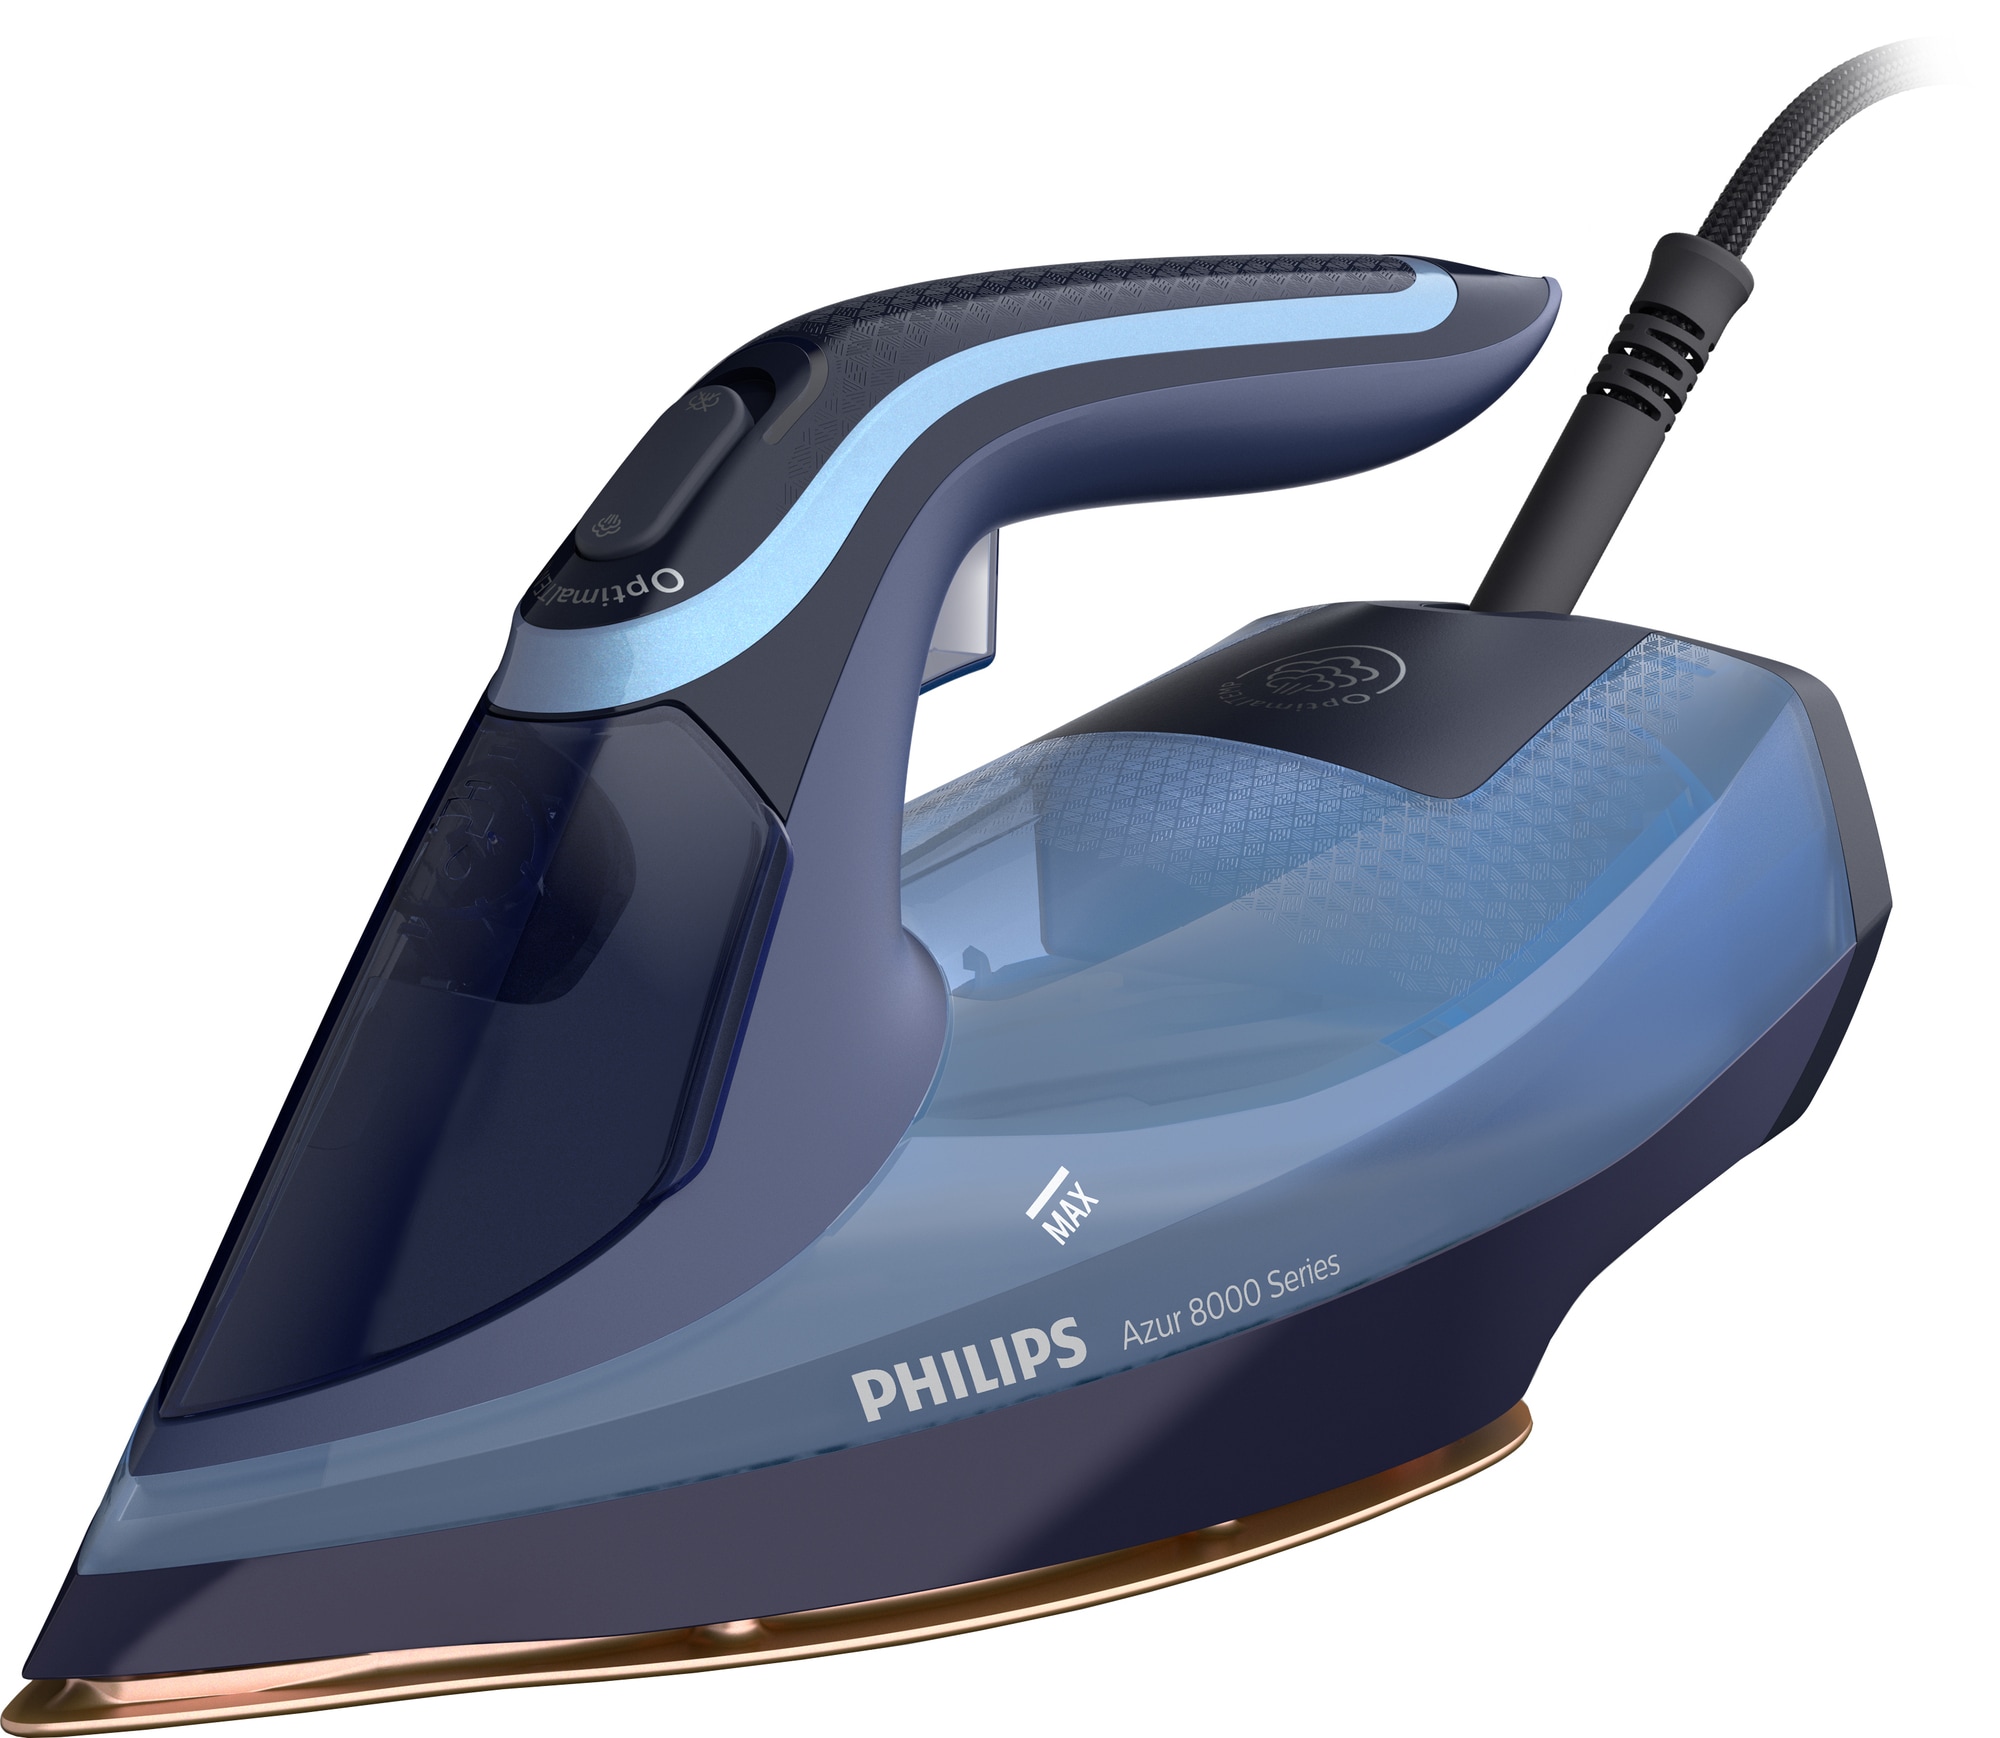 Philips Azur höyrysilitysrauta DST8020/21 - Gigantti verkkokauppa